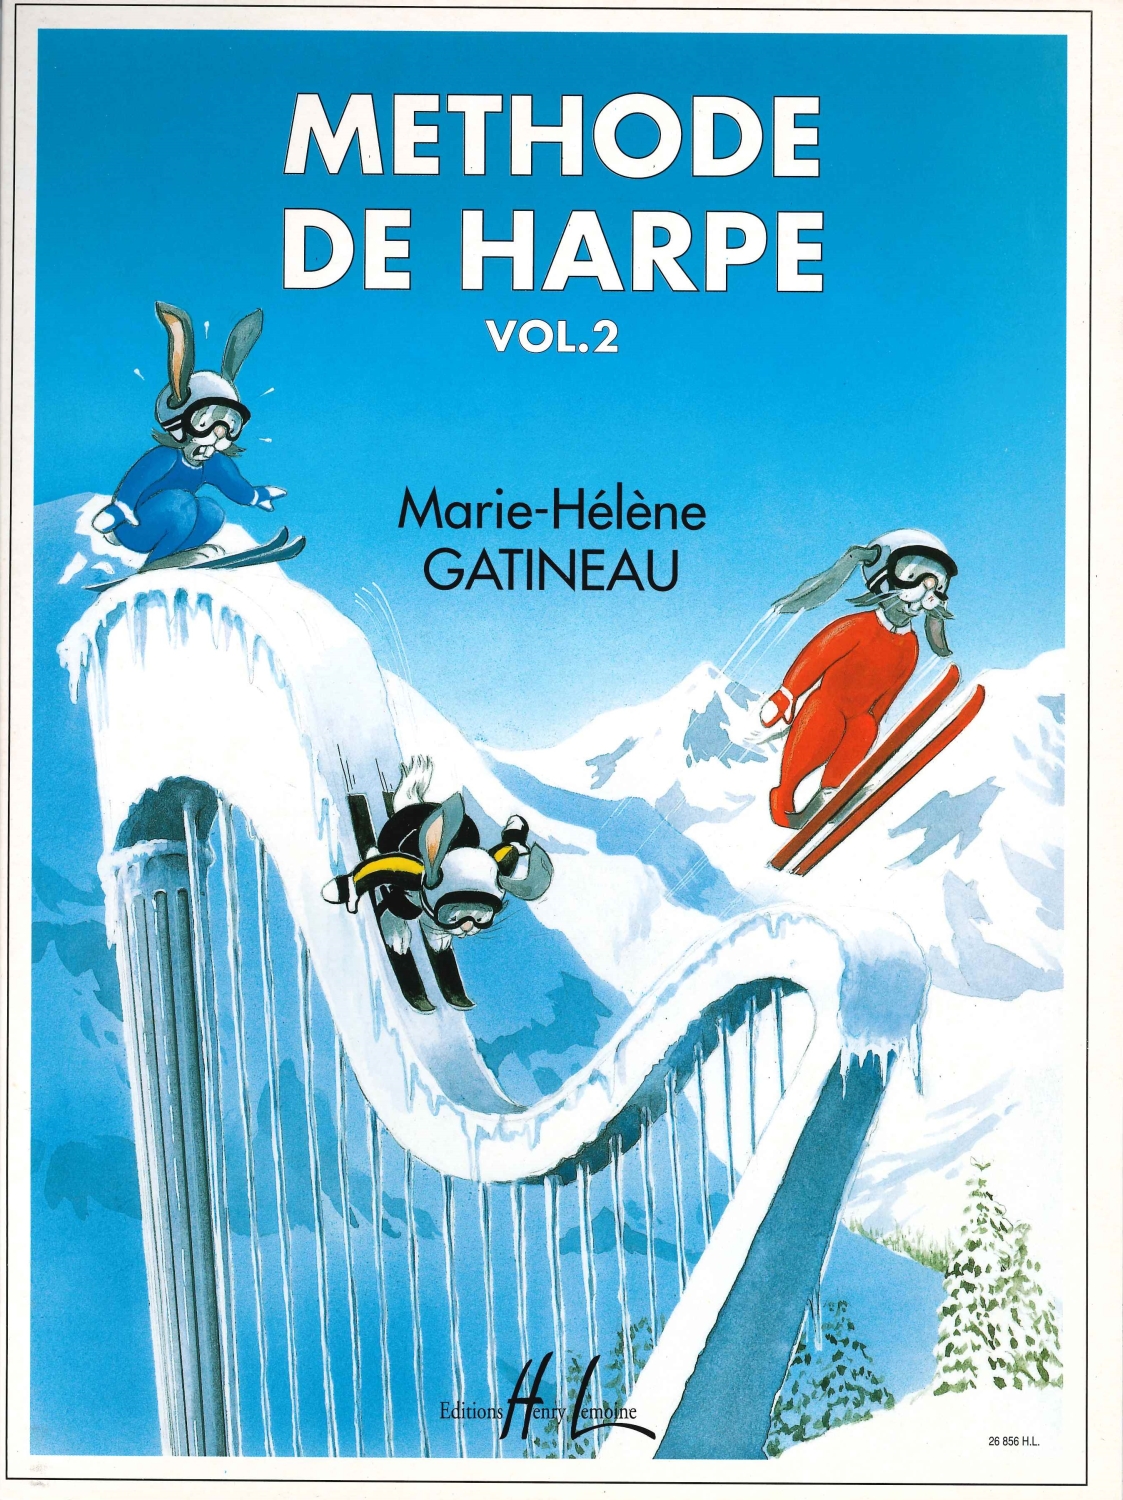 marie-helene-gatineau-methode-de-harpe-vol-2-hp-_0001.JPG